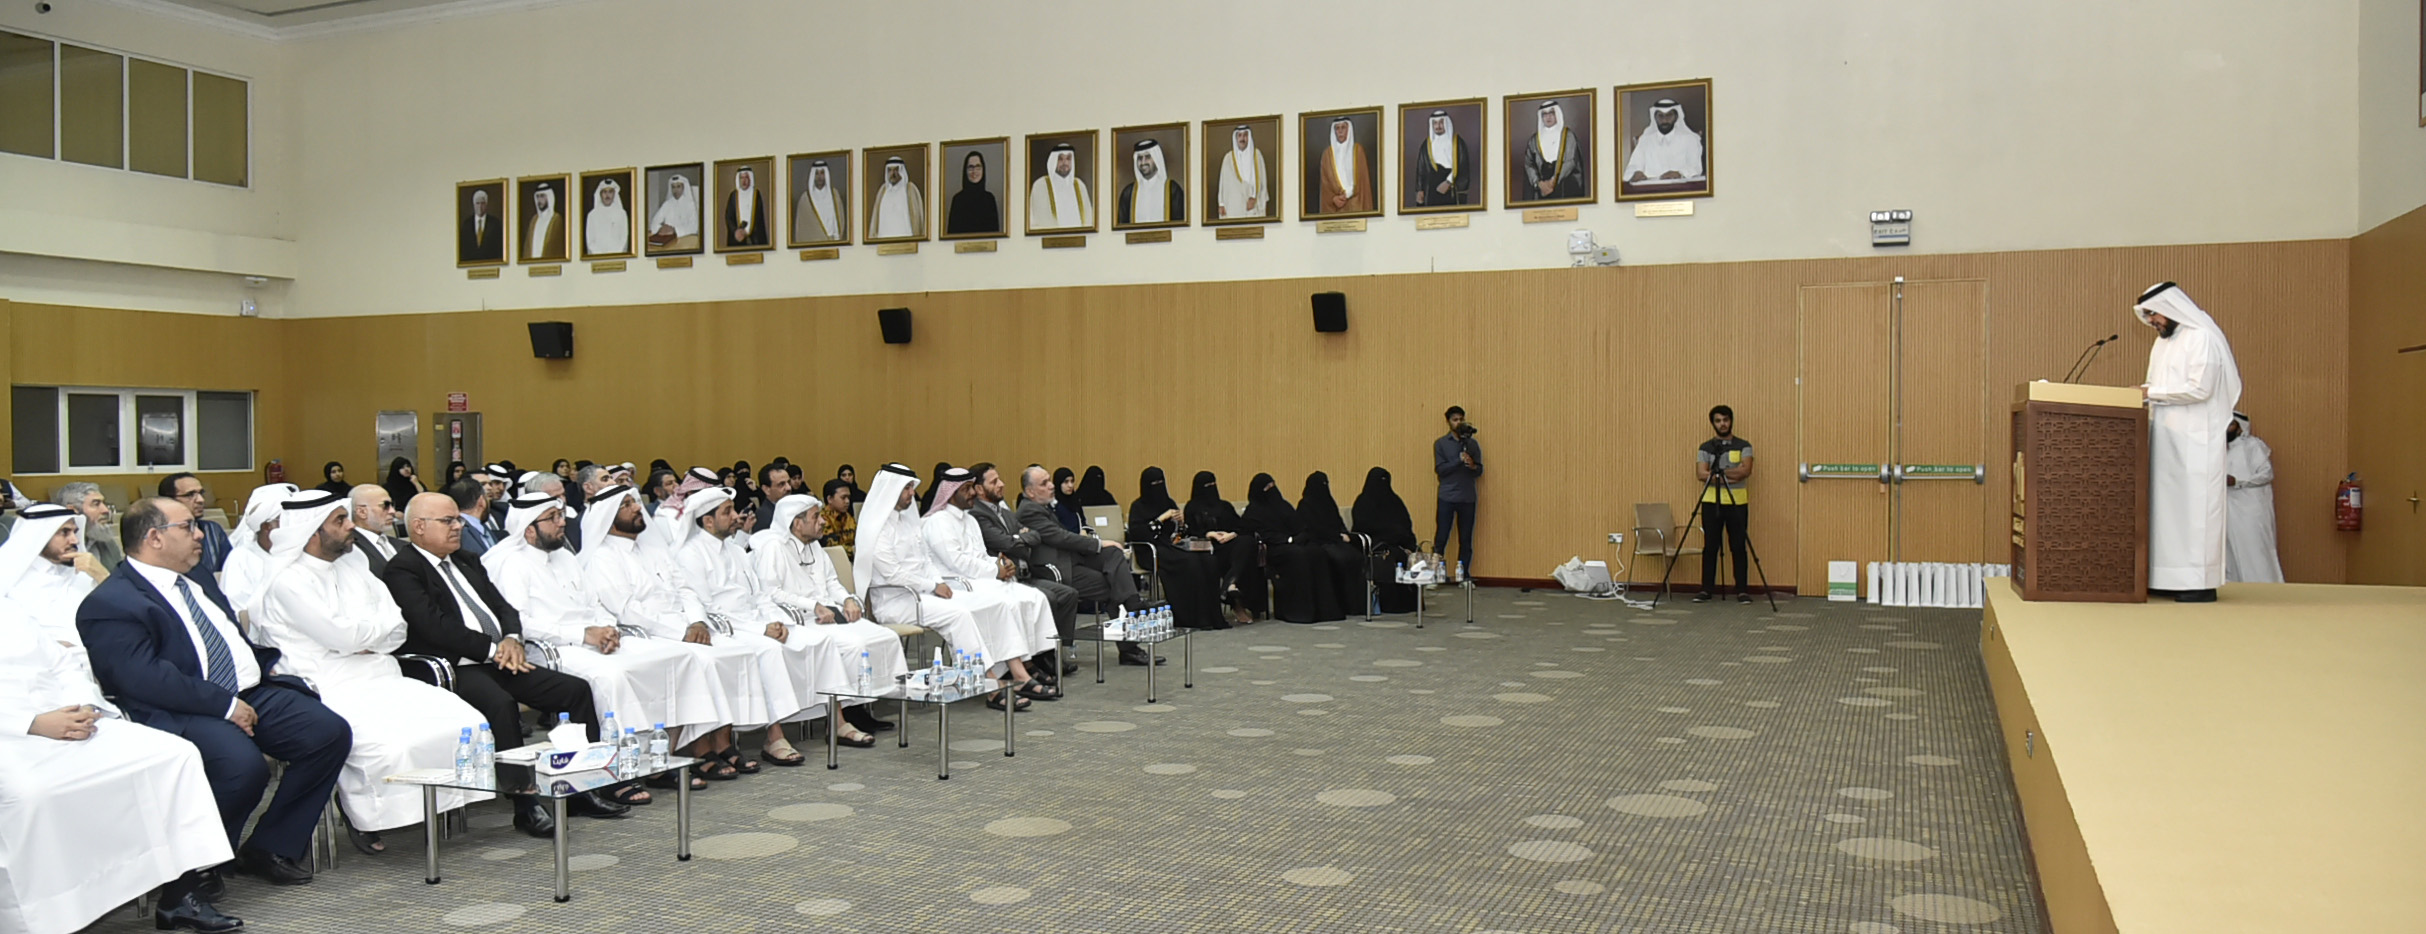 تكريم اللجنة القطرية لتحالف الحضارات في الحفل الختامي لكلية الشريعة والدراسات الاسلامية 